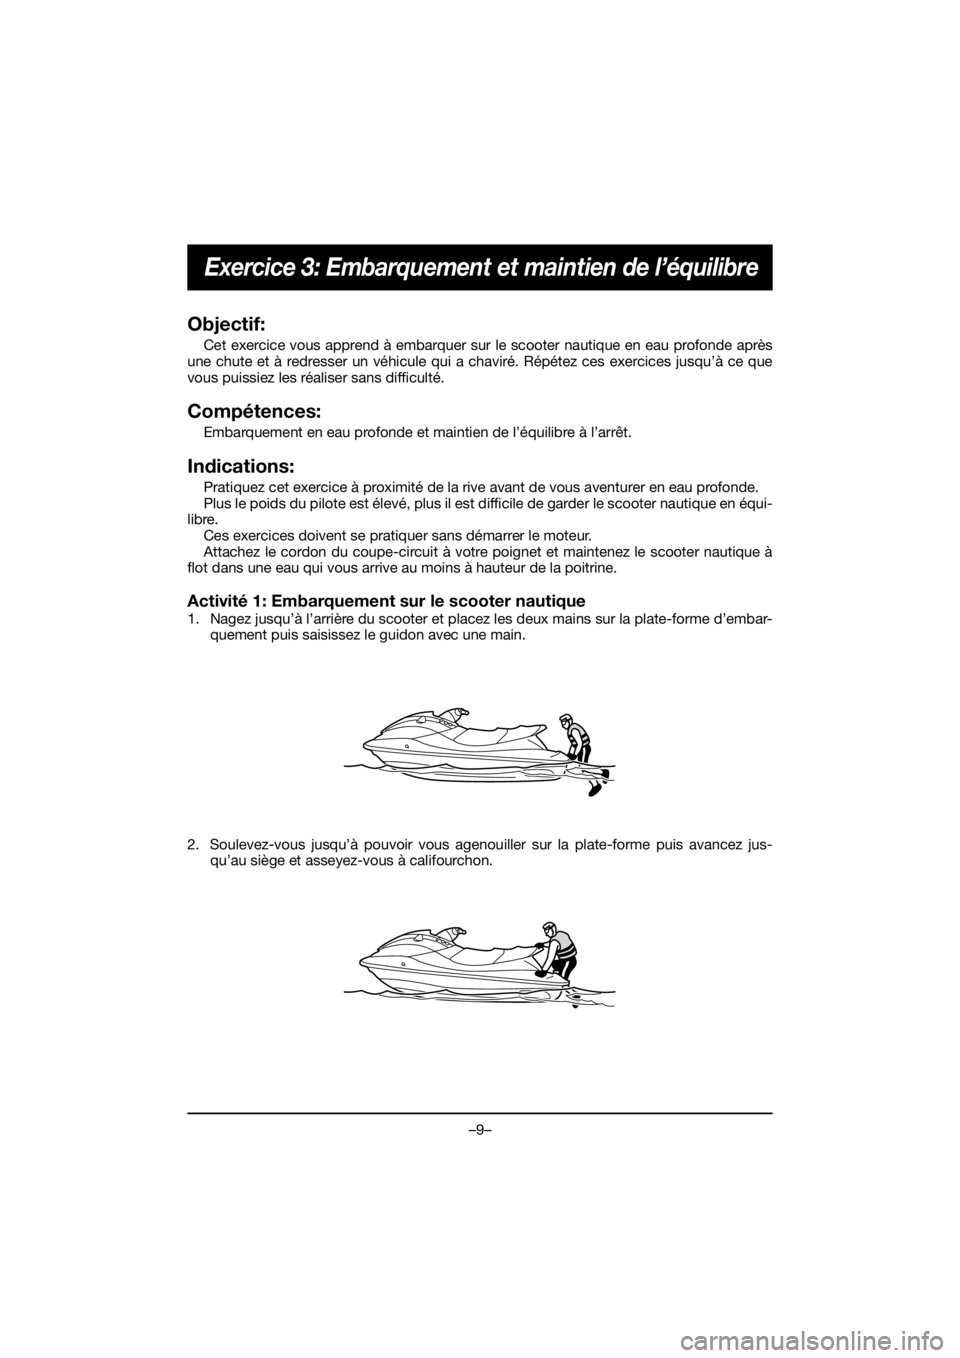 YAMAHA FJR1300 2019  Notices Demploi (in French) –9–
Exercice 3: Embarquement et maintien de l’équilibre
Objectif:
Cet exercice vous apprend à embarquer sur le scooter nautique en eau profonde après
une chute et à redresser un véhicule qu